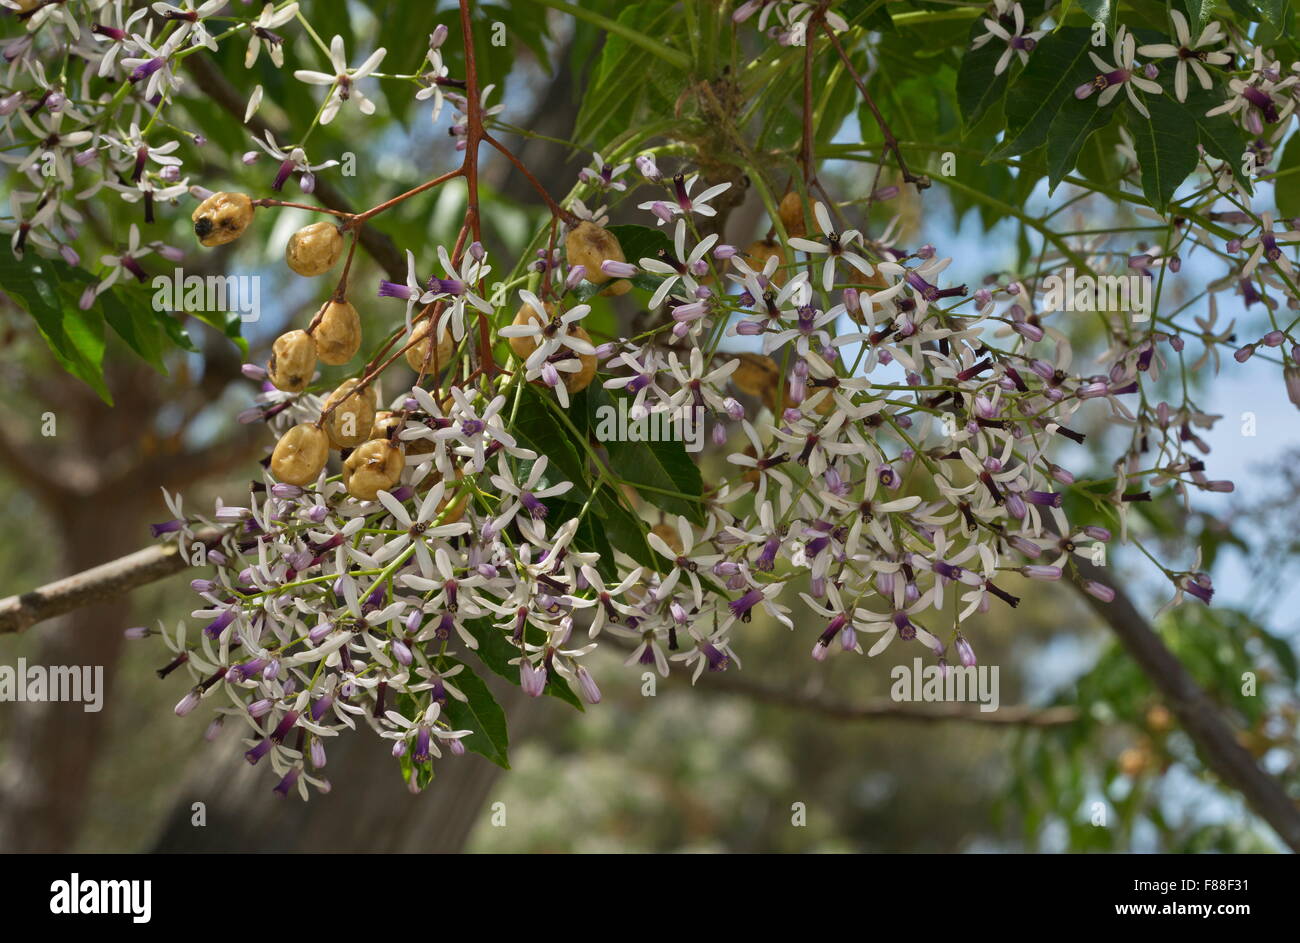 Cordone indiano ad albero o lilla persiano, Melia azederach in fiore e frutto. Foto Stock